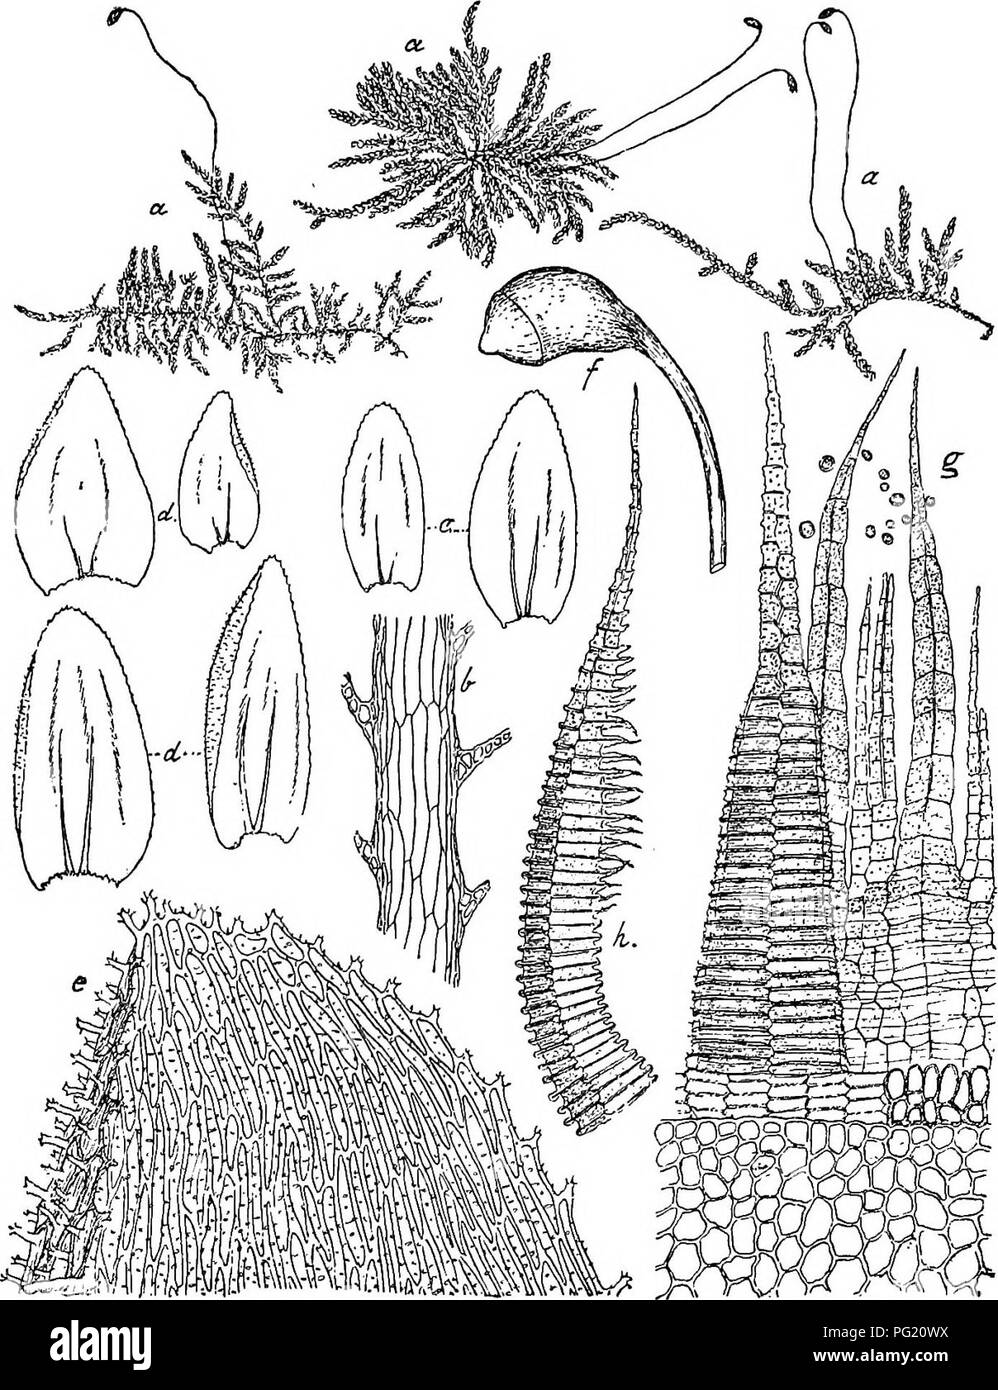 . Flore de Buitenzorg. Botany. 1369 Einhausig! cT Knospen Idein, astgrundstandig, Antheridien zahlreich, Paraphysen sparlich, rudimentar, Hullblatter glatt, innere oblong, oben ausgeraudet, 2â3 spitzig; 9 Bluten gross, Fig. 322.. Fsmdohypnella verrucosa (Dz. et Mb.) Flsch. a. Habitusbild (nat. Grfisse). e. Blattspitze Â»JÂ». b. Stengellangssclinitt mit Blattiuseition VÂ°- /â SpoiogOD ^-^. c. Stengelblatter '/â g- Peristom dorsal gesehea ii-S.. d. Astblatter V- /Â«. Exostomzahn im Profil gesehen ii-Â». stengelstandig, mit Paraphysen, Hullblatter ovallauglich, stumpf- licli spitz. â Pflanzen meh Stock Photo